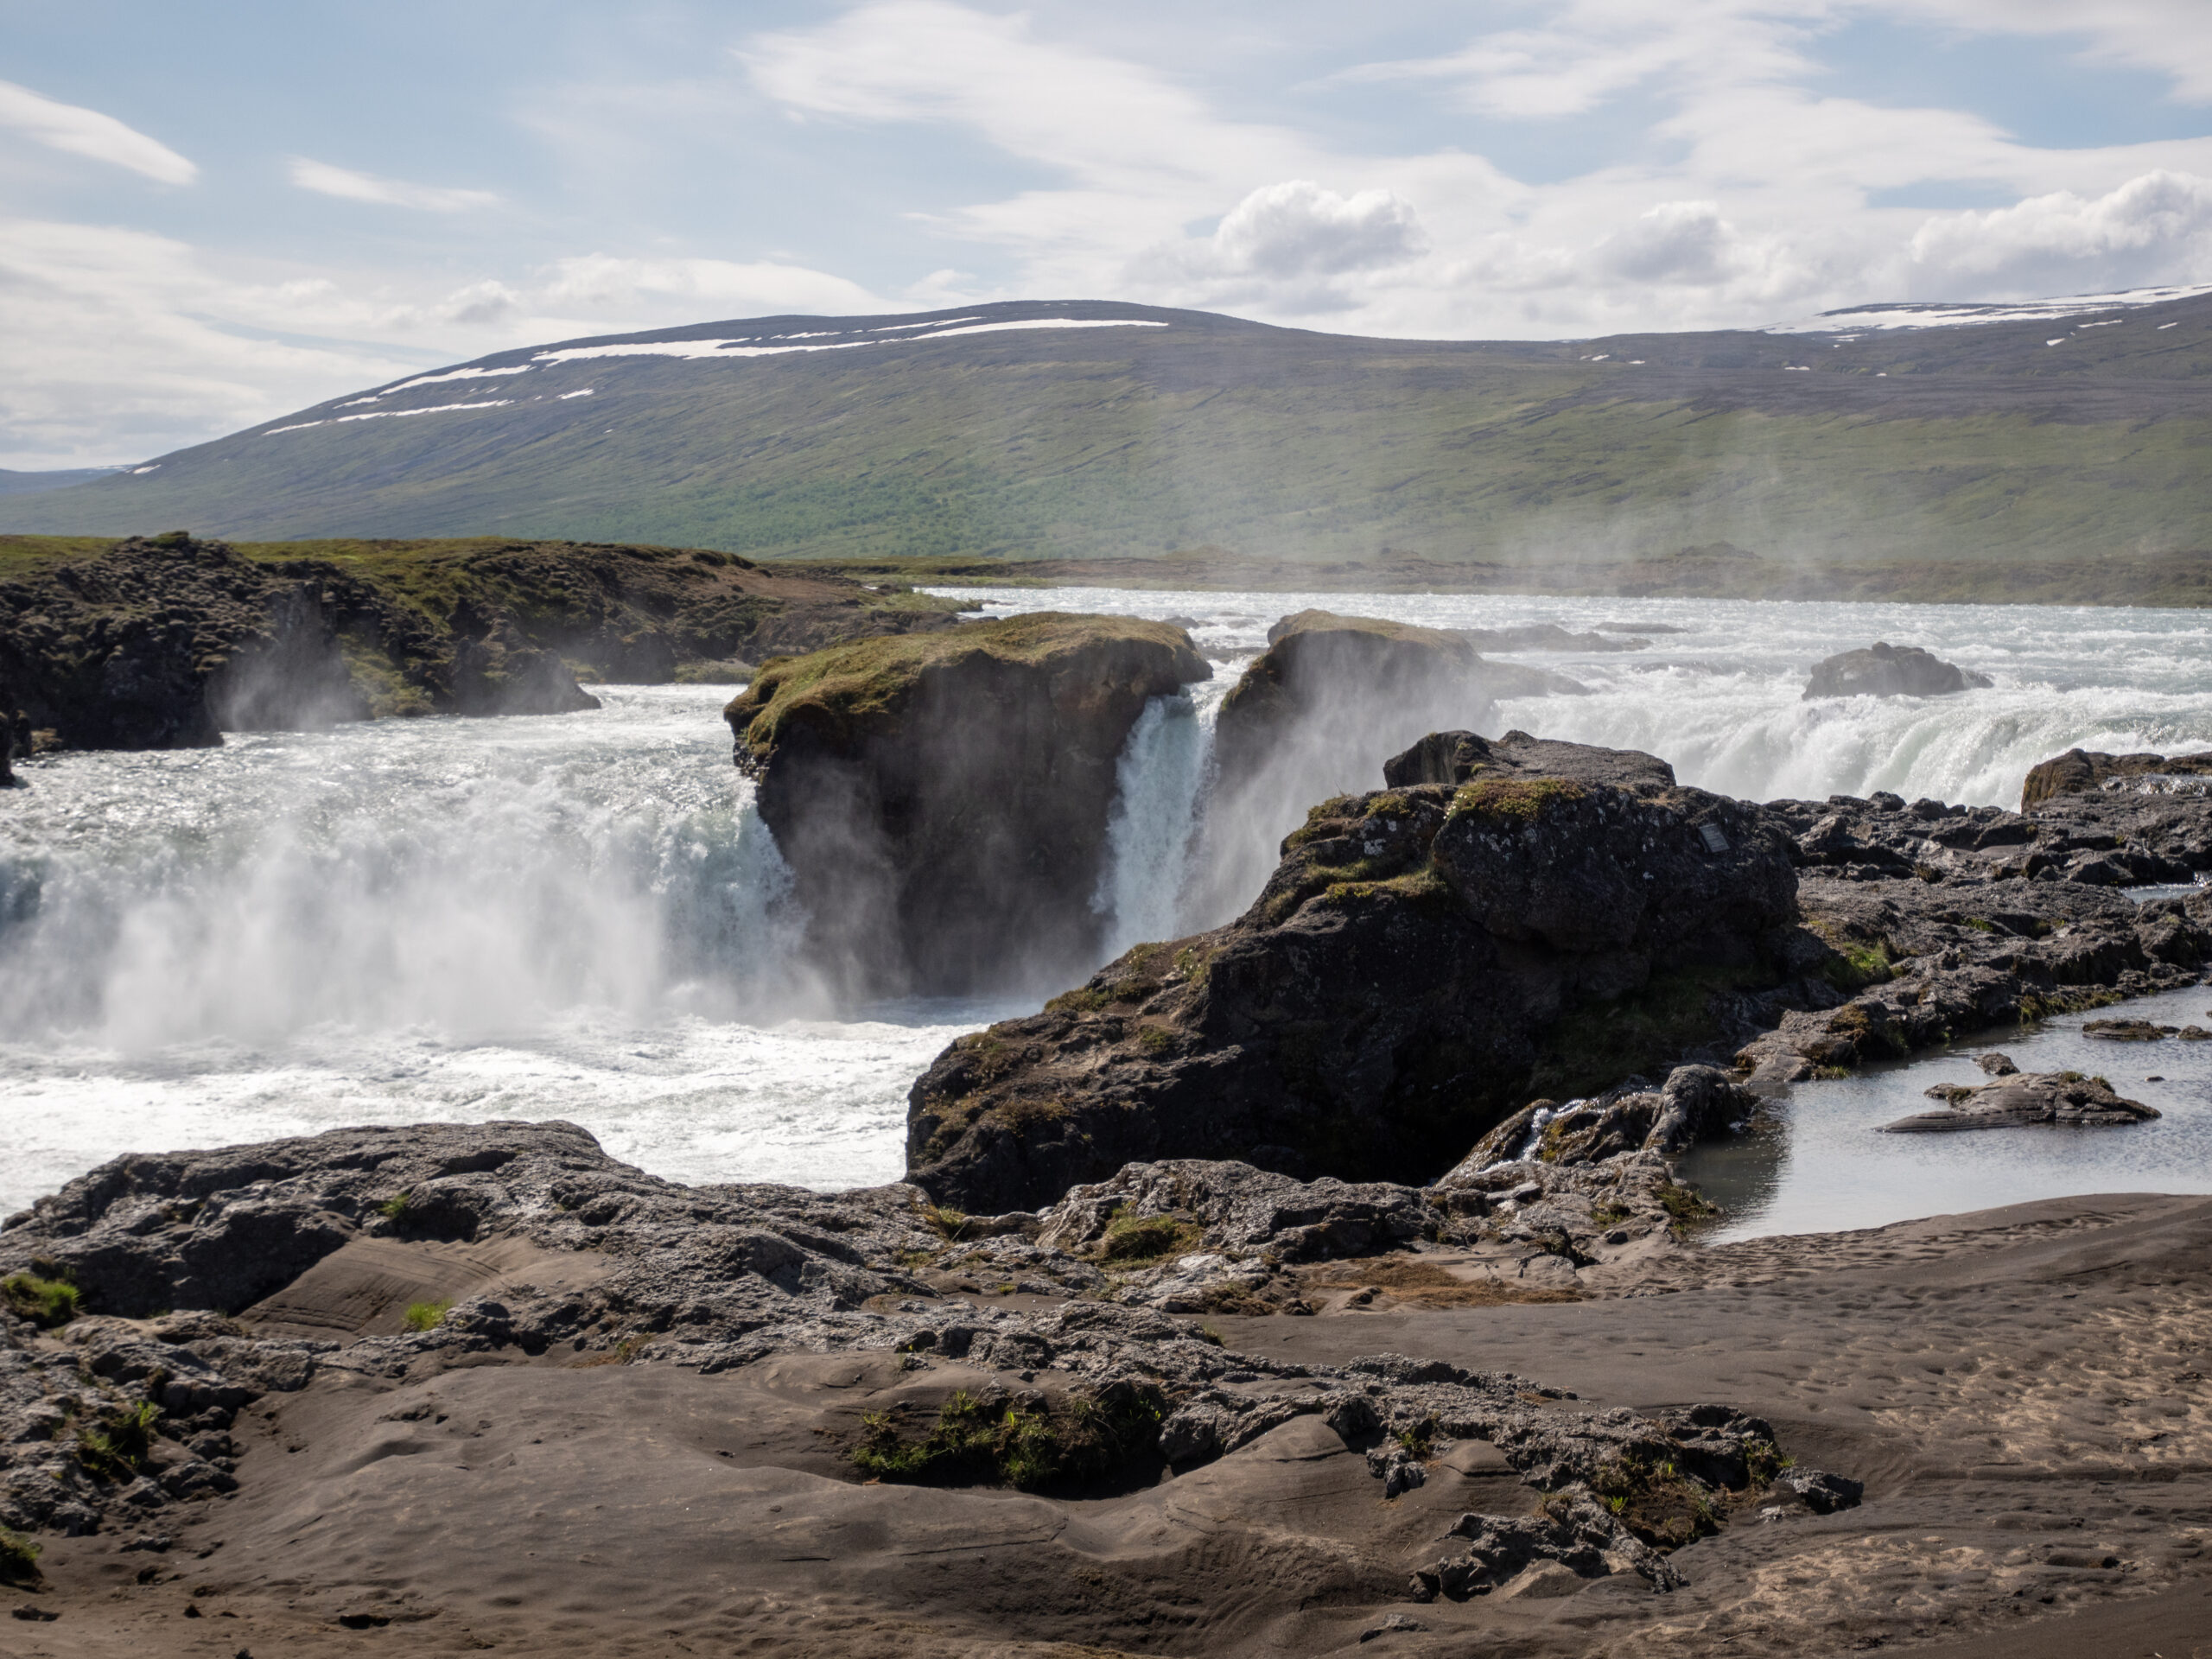 Cascade Godafoss
Voyage en Islande juin 2020